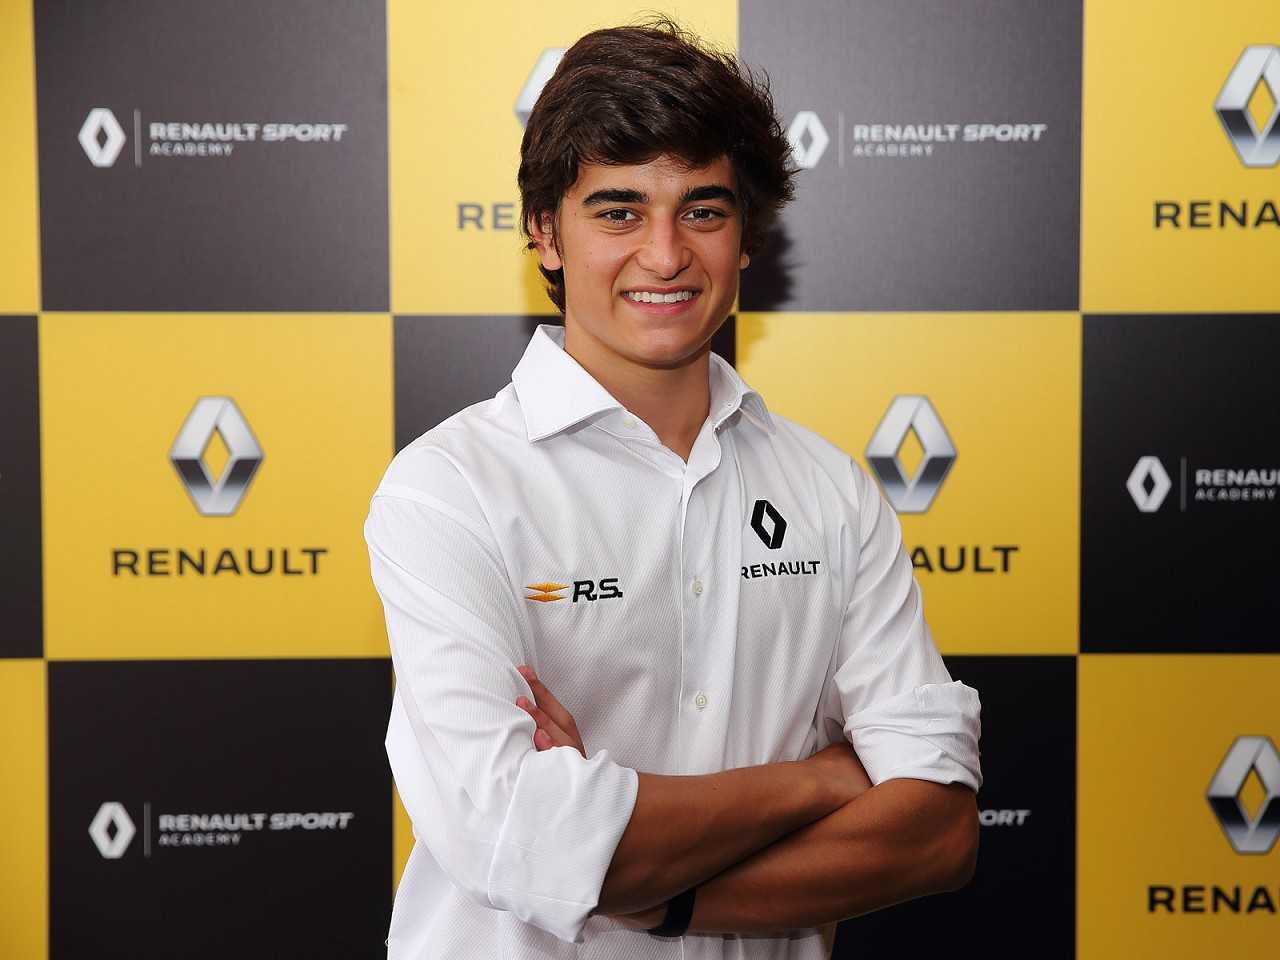 Acima o piloto brasileiro Caio Collet, que vai participar da Renault Sport Academy em 2019